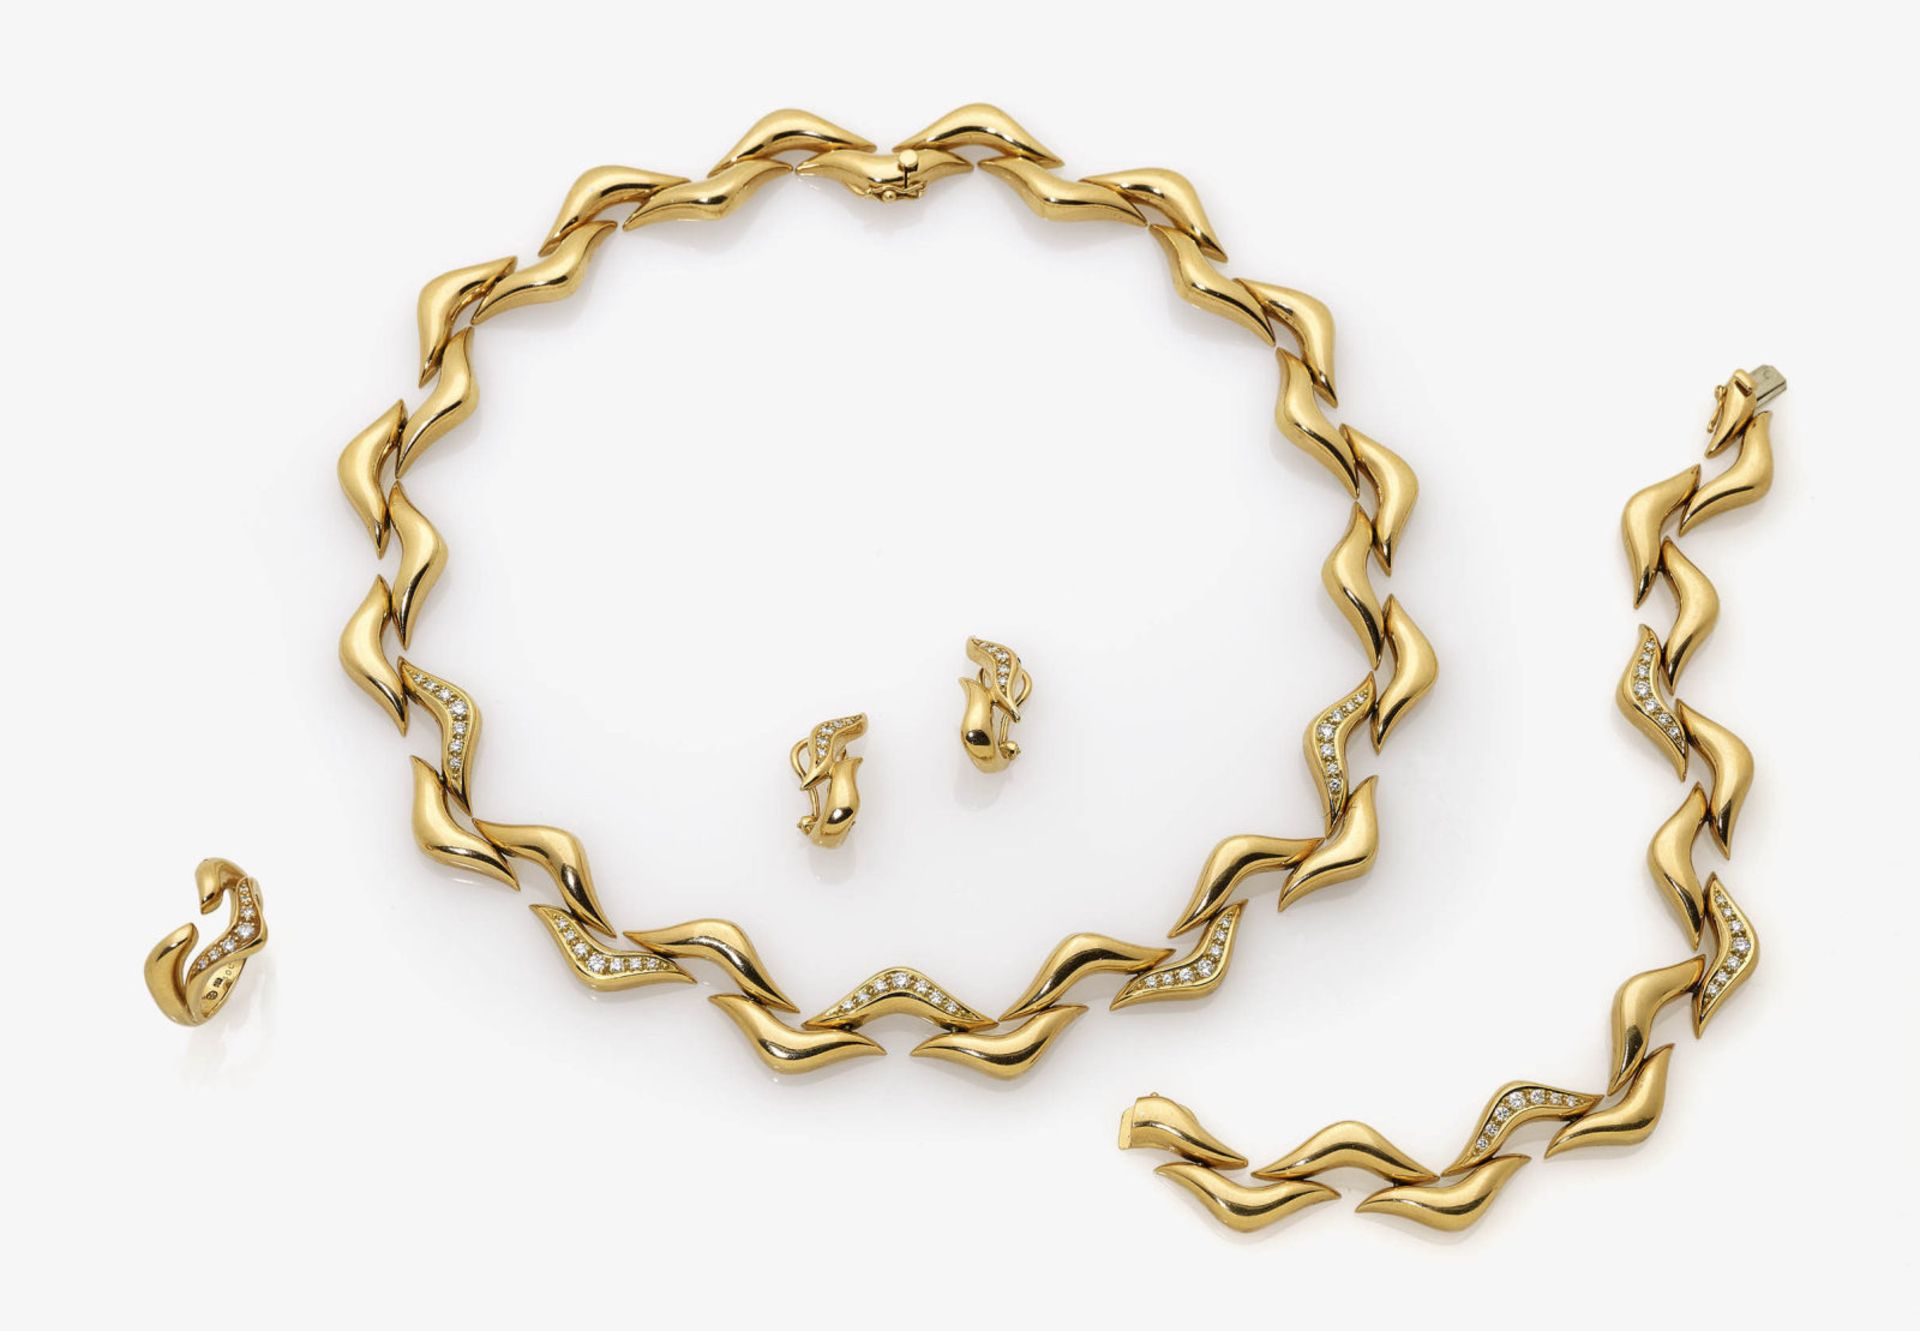 Parure bestehend aus Collier, Armband, einem Paar Ohrclips und einem Ring